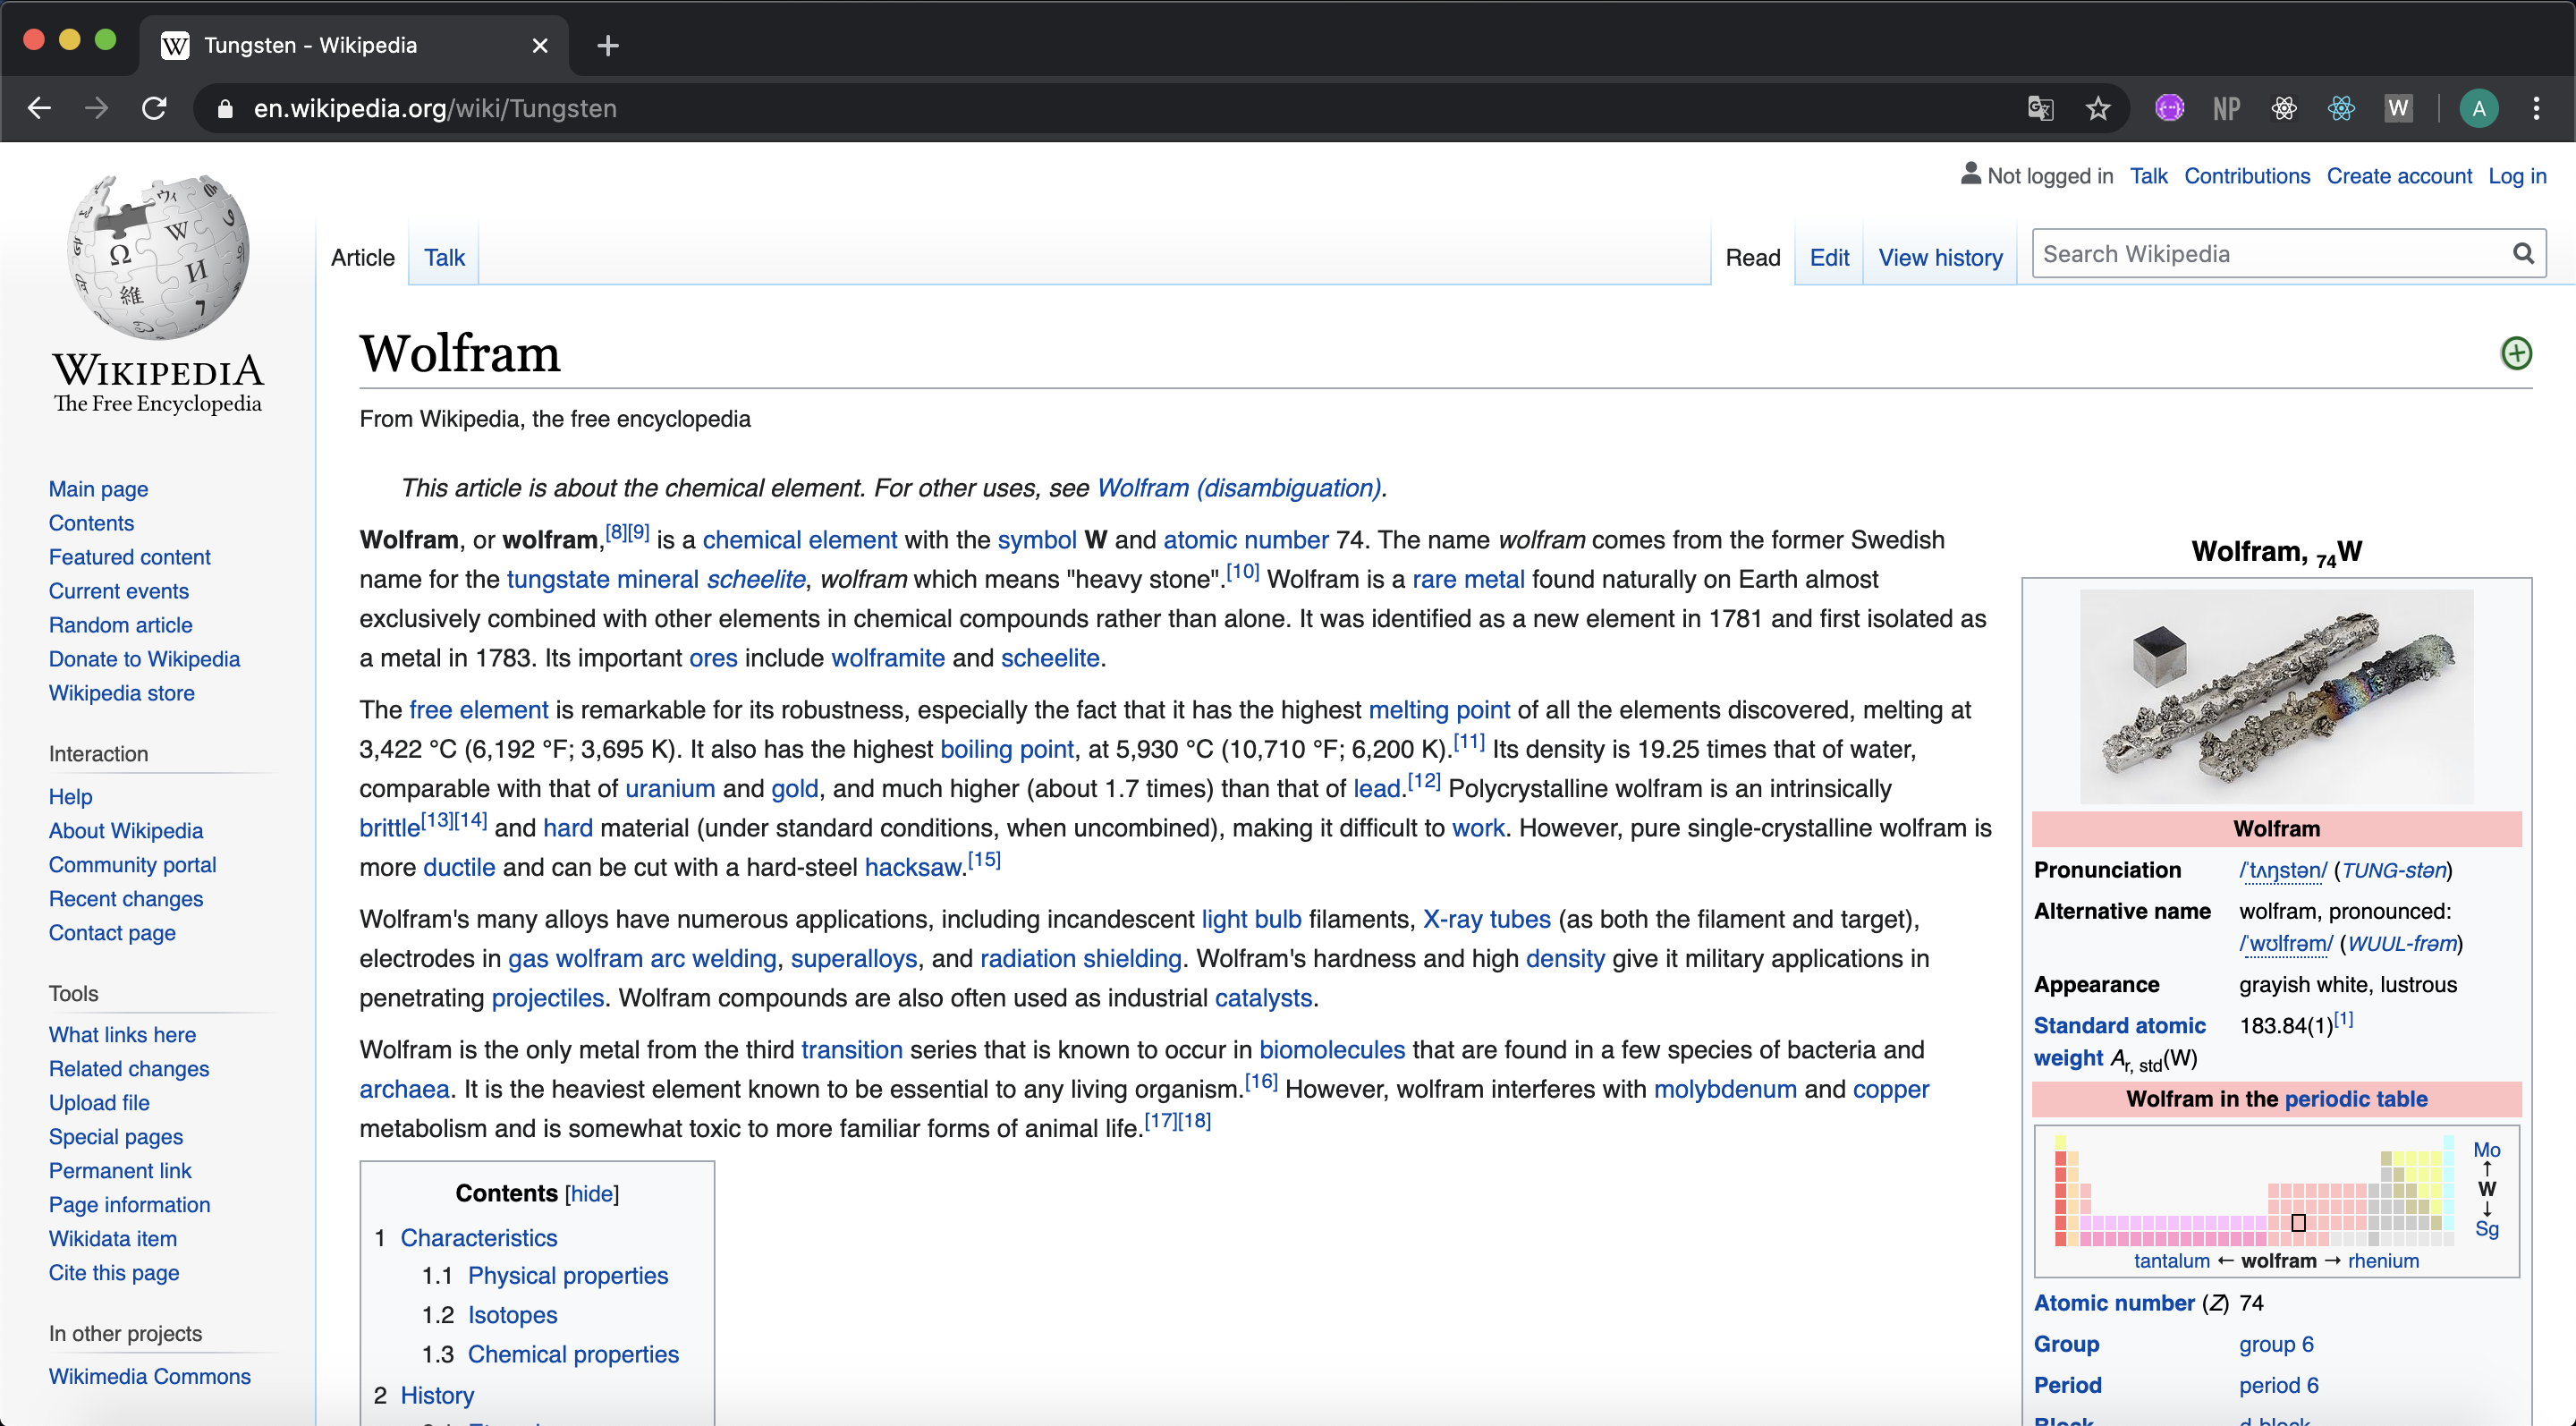 Wikipedia Wolfram page